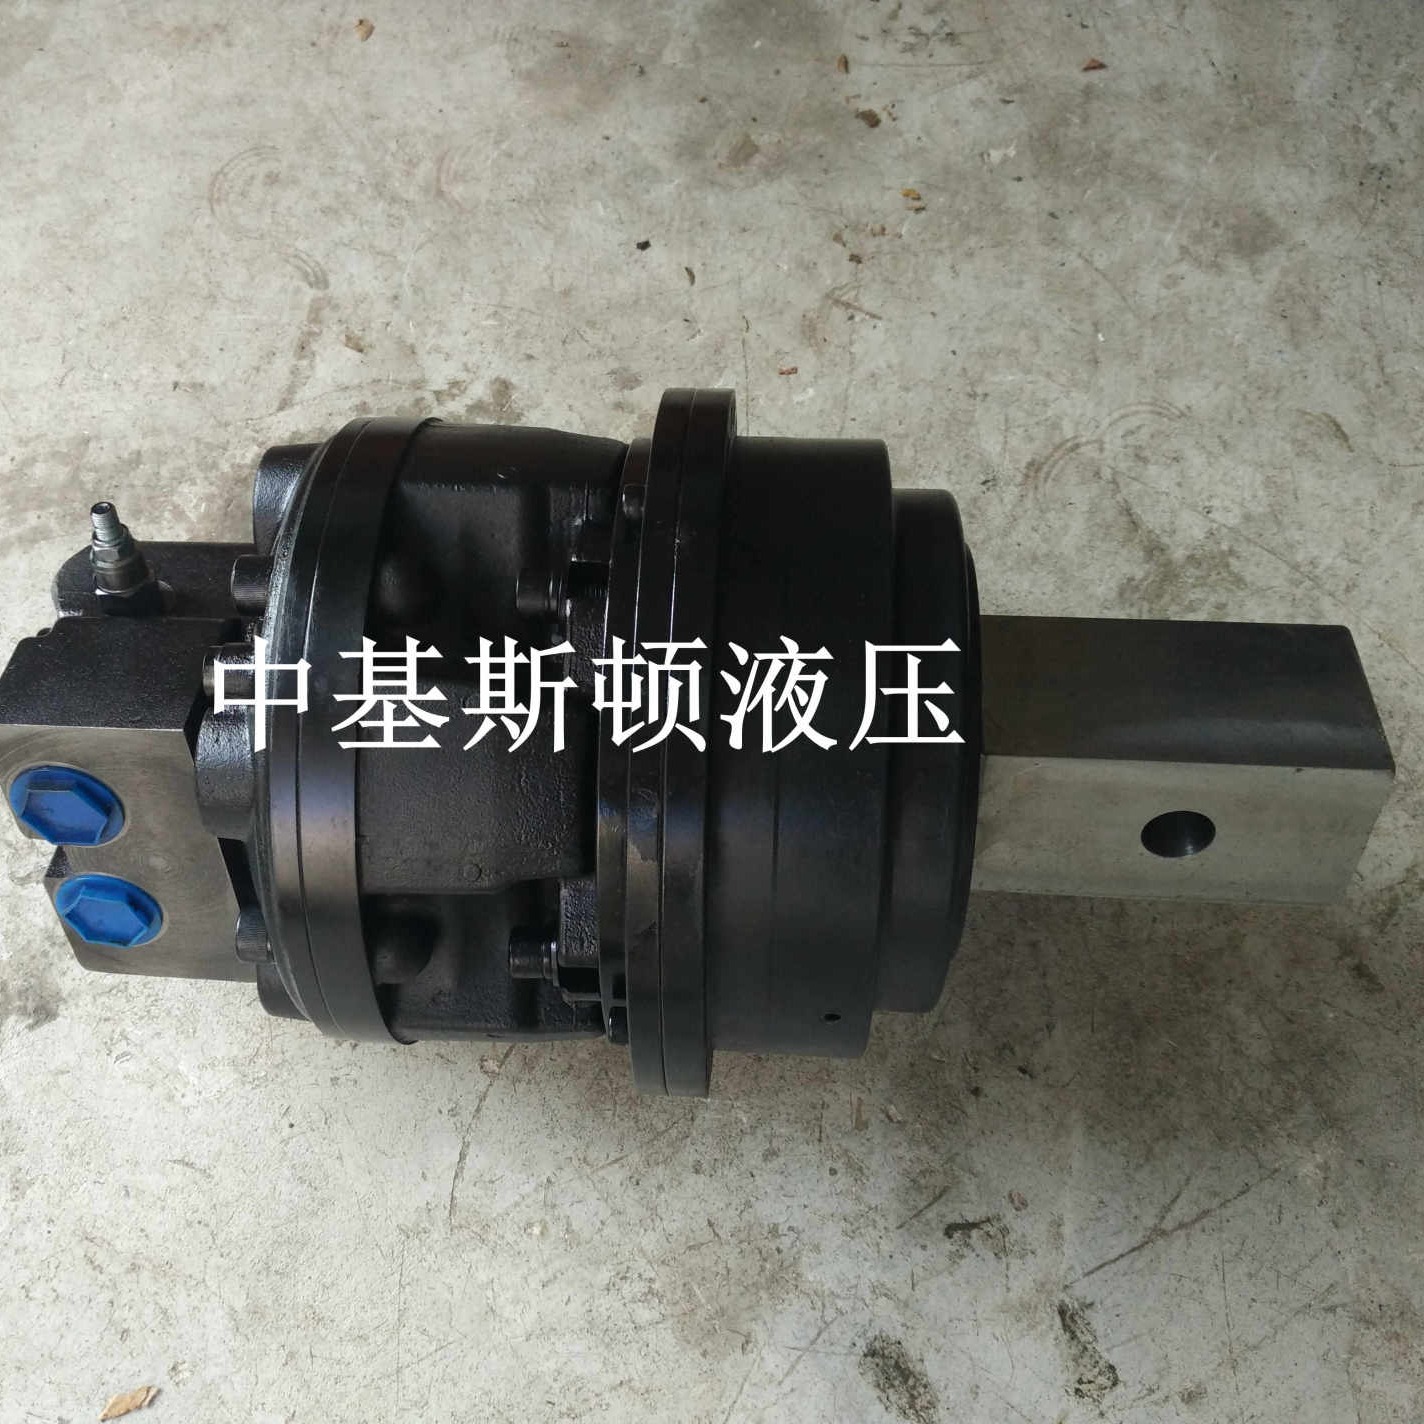 中基斯顿液压挖机改装动力头液压马达5000牛米JNG3-1700液压马达减速机